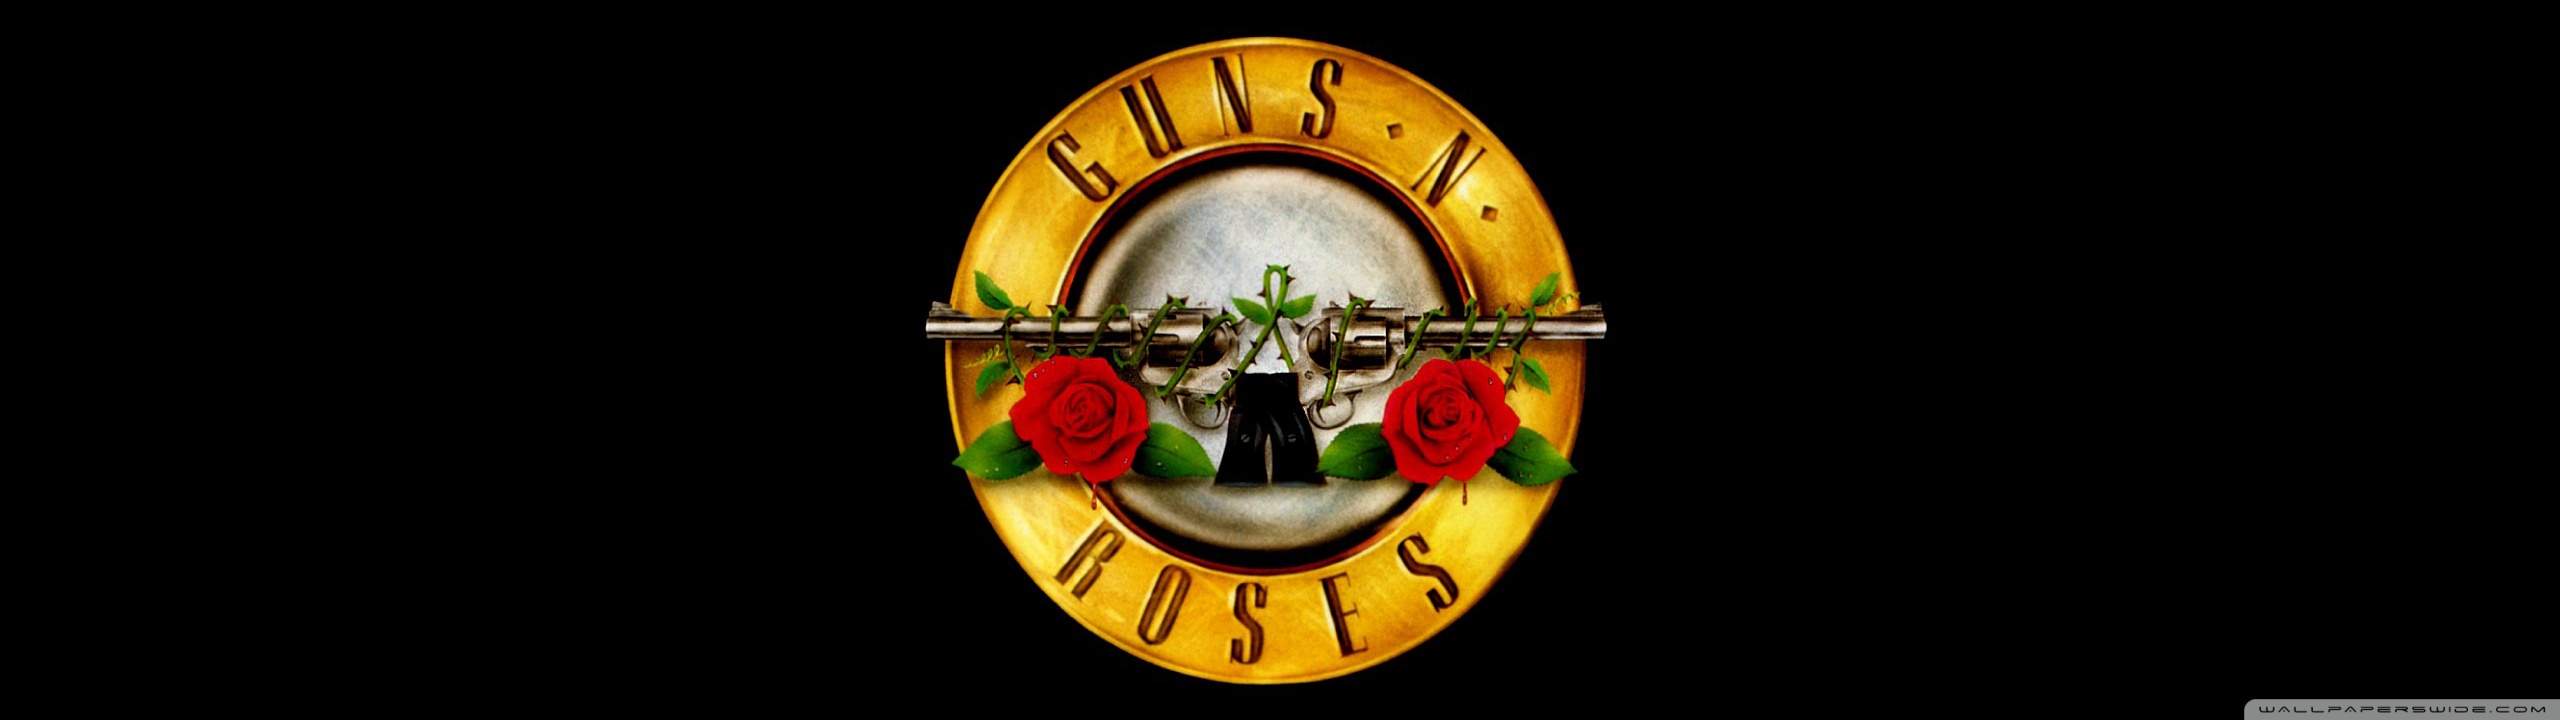 Guns N Roses Logo HD Desktop Wallpaper Widescreen